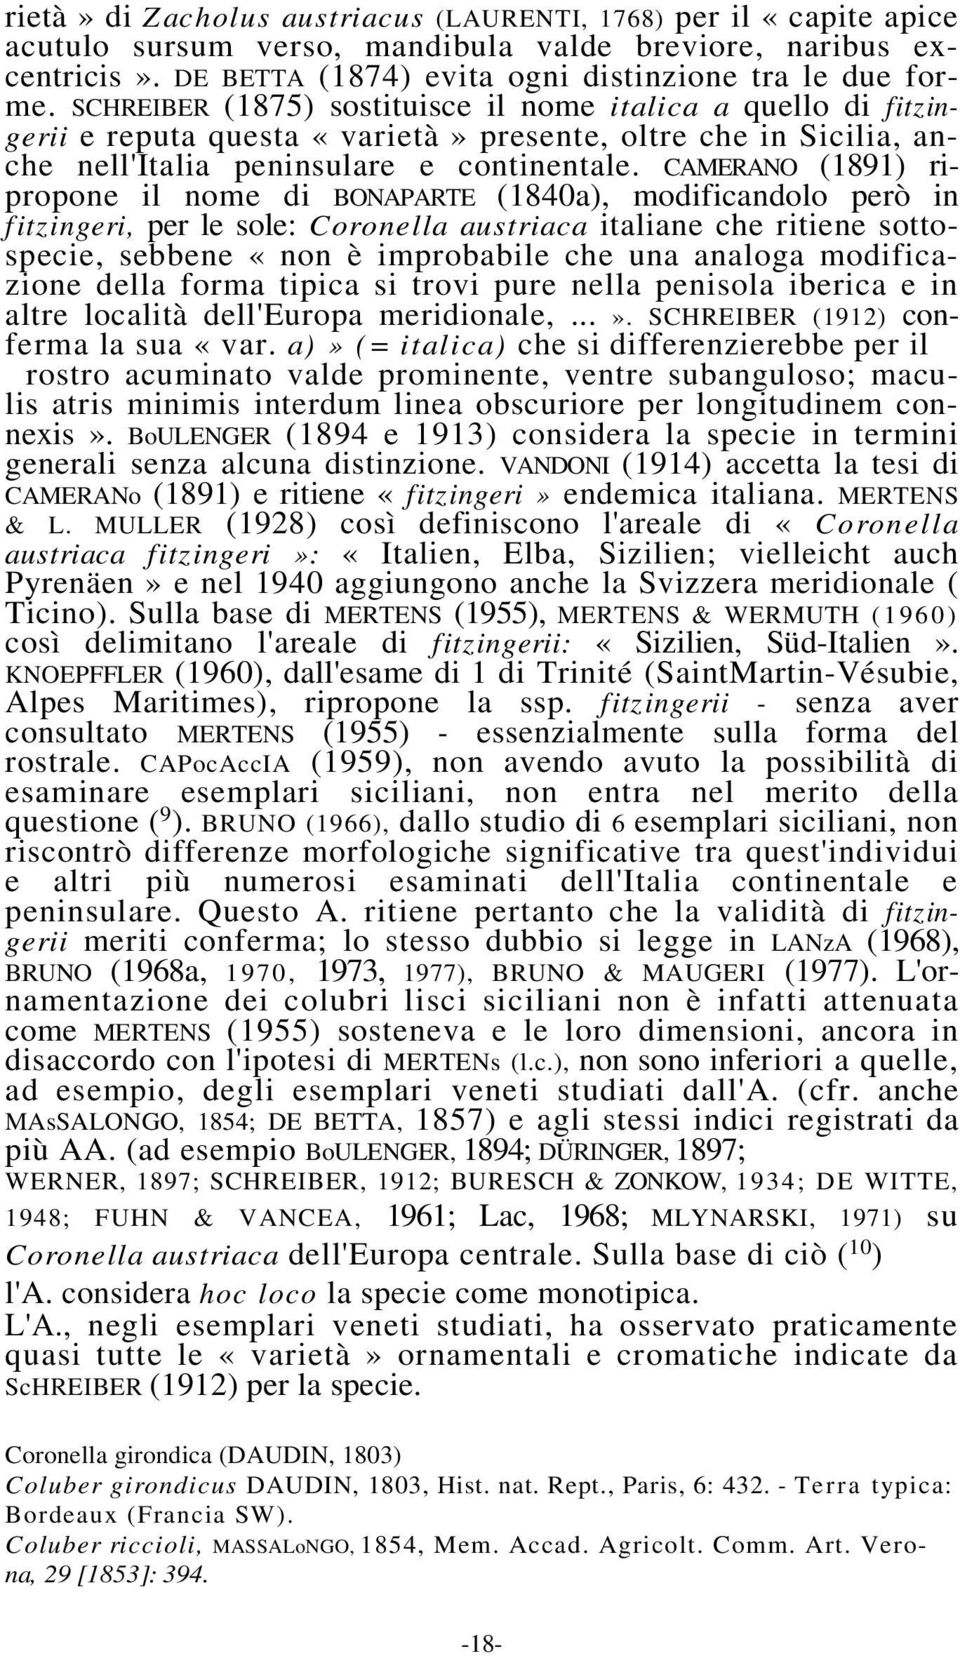 CAMERANO (1891) ripropone il nome di BONAPARTE (1840a), modificandolo però in fitzingeri, per le sole: Coronella austriaca italiane che ritiene sottospecie, sebbene «non è improbabile che una analoga